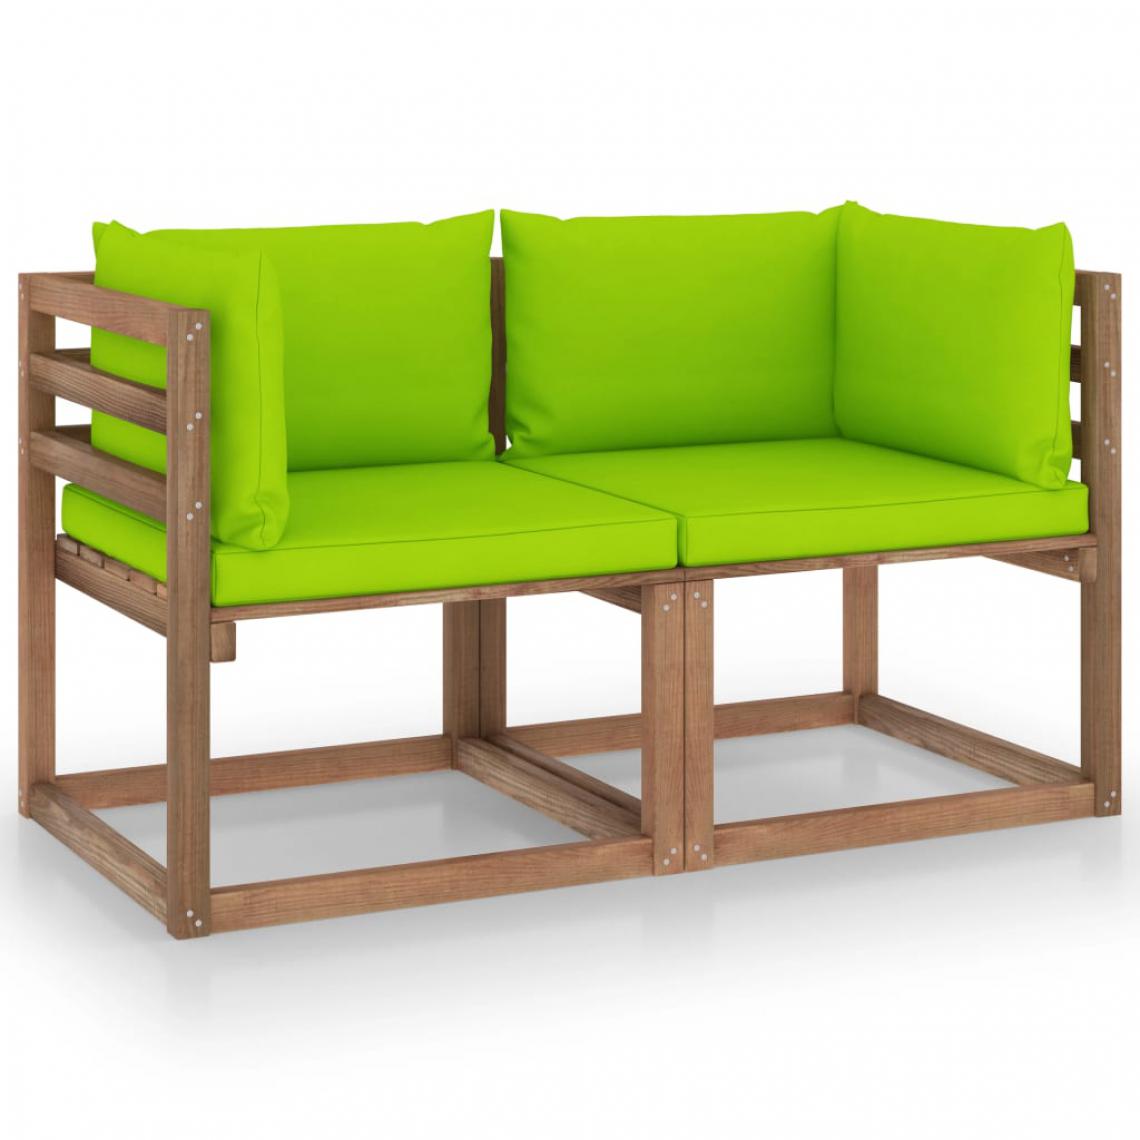 Chunhelife - Canapé palette de jardin 2 places et coussins vert vif Pinède - Ensembles canapés et fauteuils